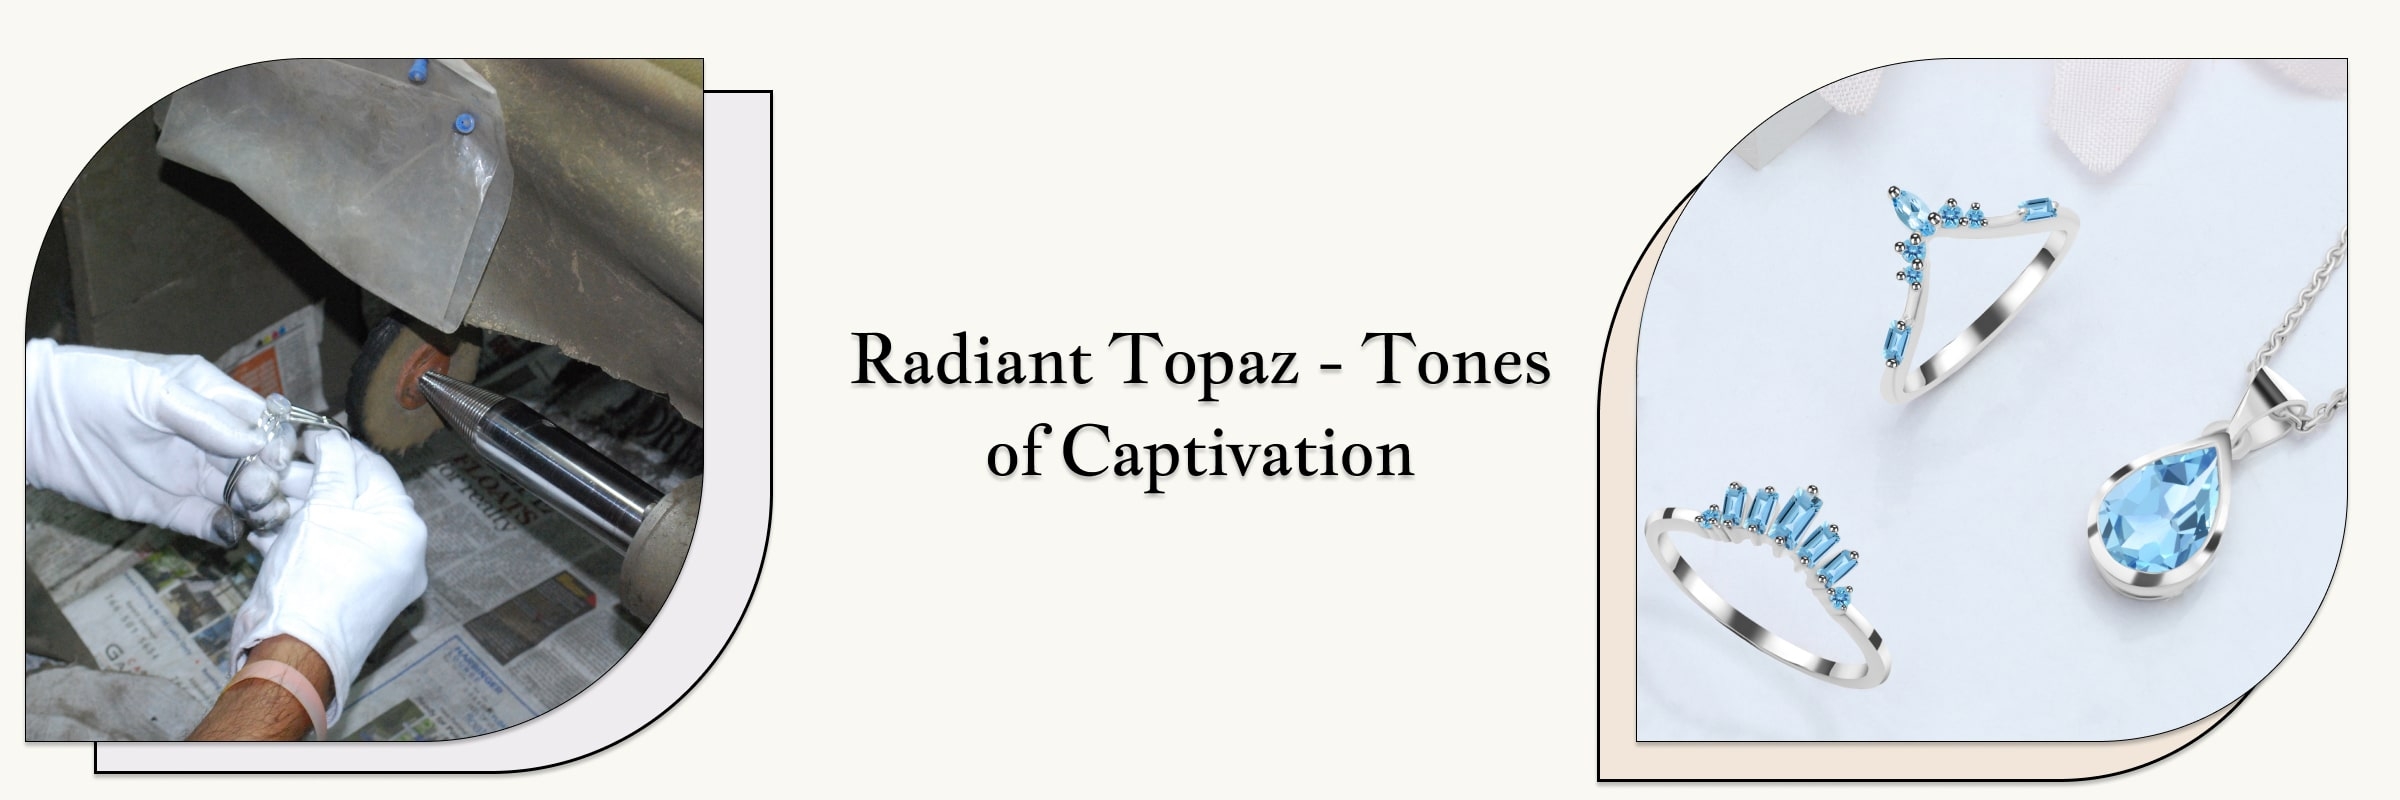 Topaz Tones